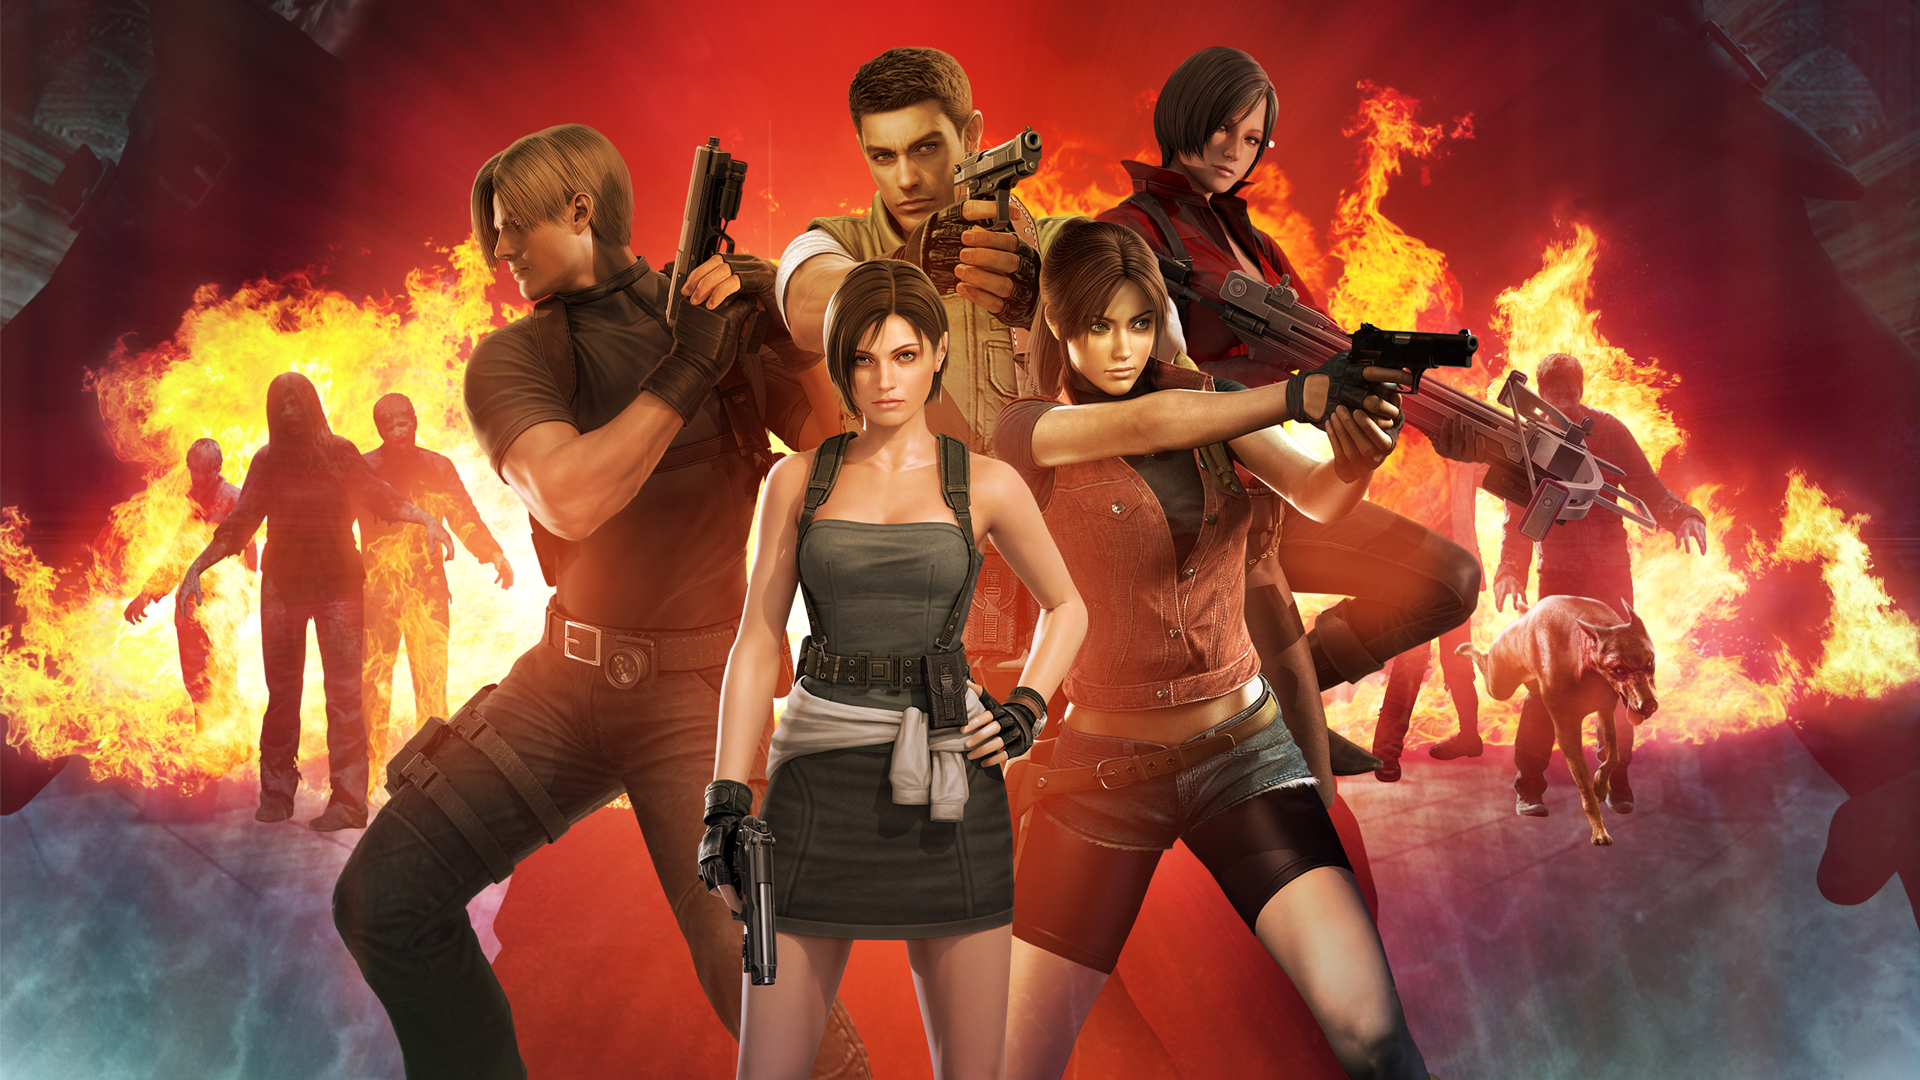 Como jogar 'de dois' em Resident Evil 5 no PS4 e Xbox One